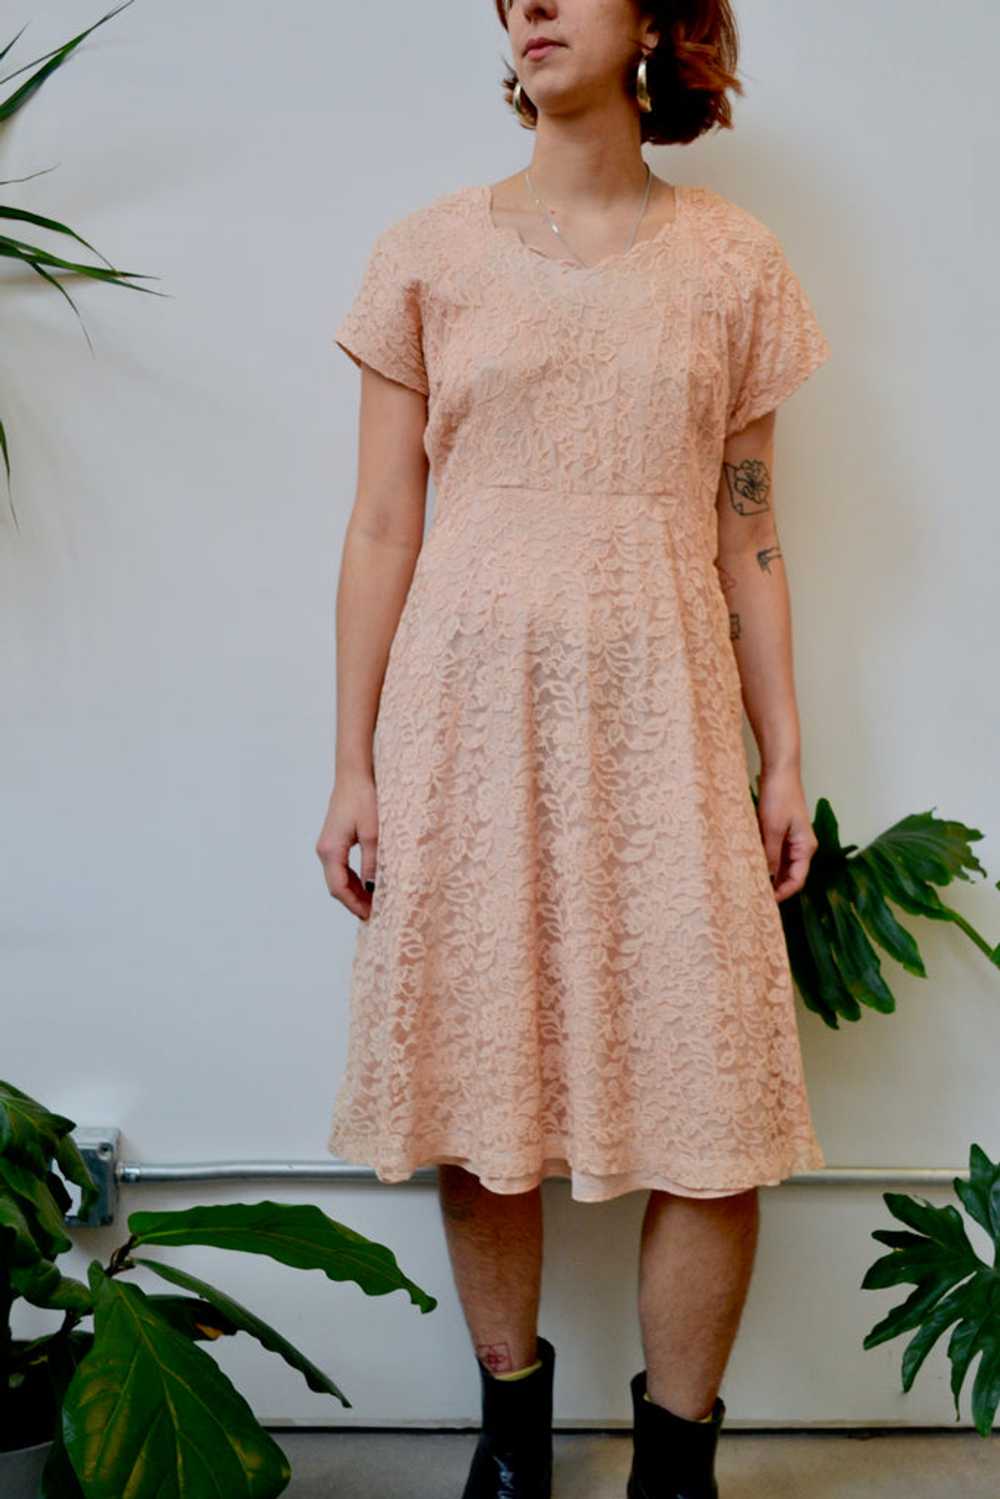 Fifties Blush Lace Dress - image 1